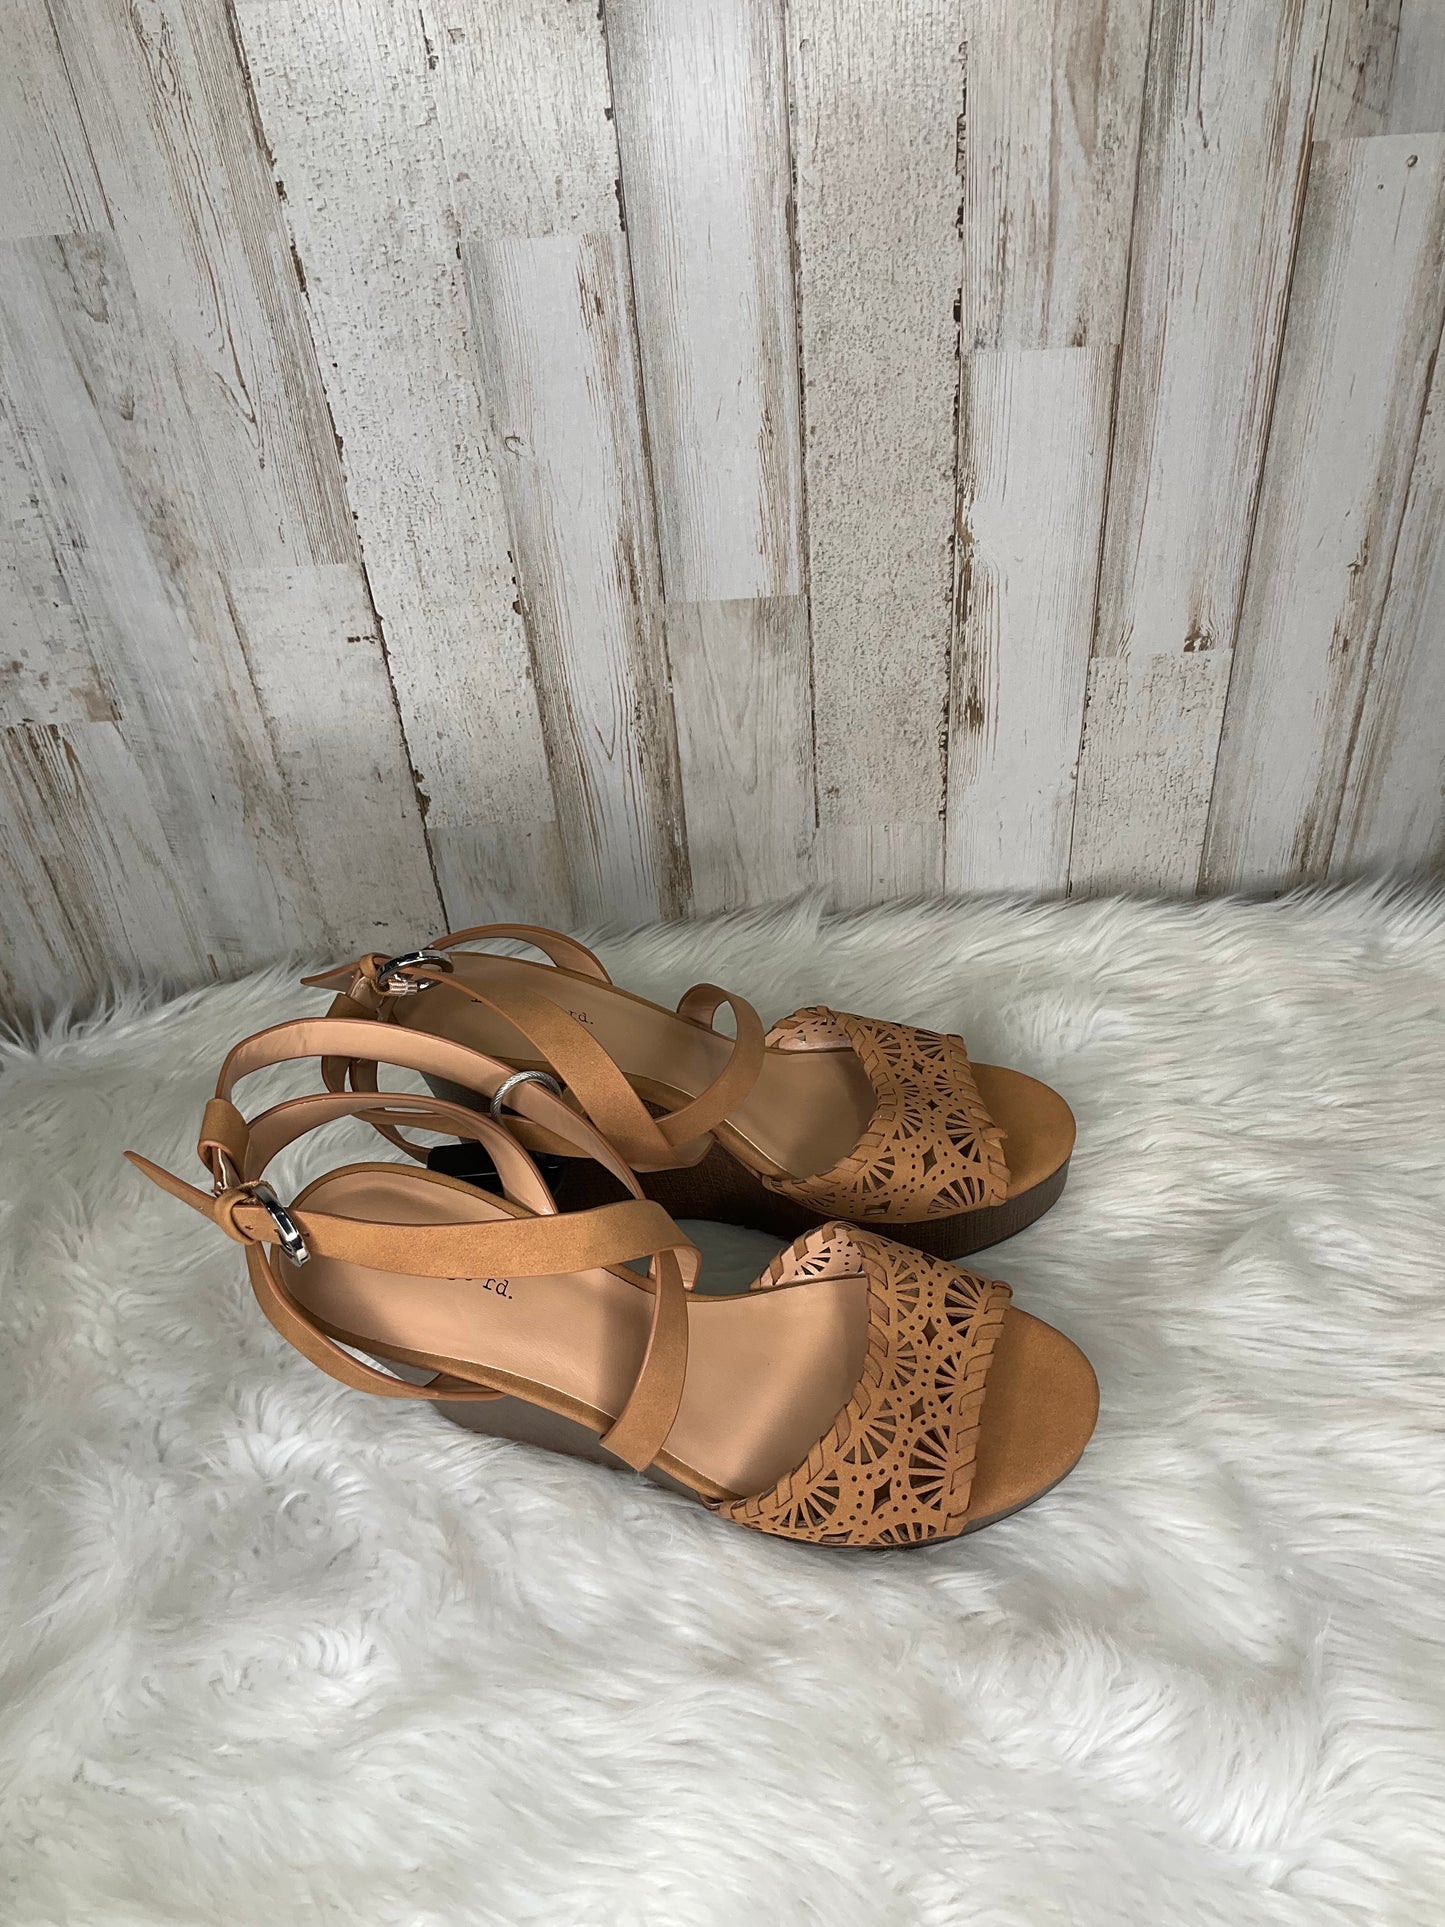 Sandals Heels Wedge By Indigo Rd  Size: 8.5